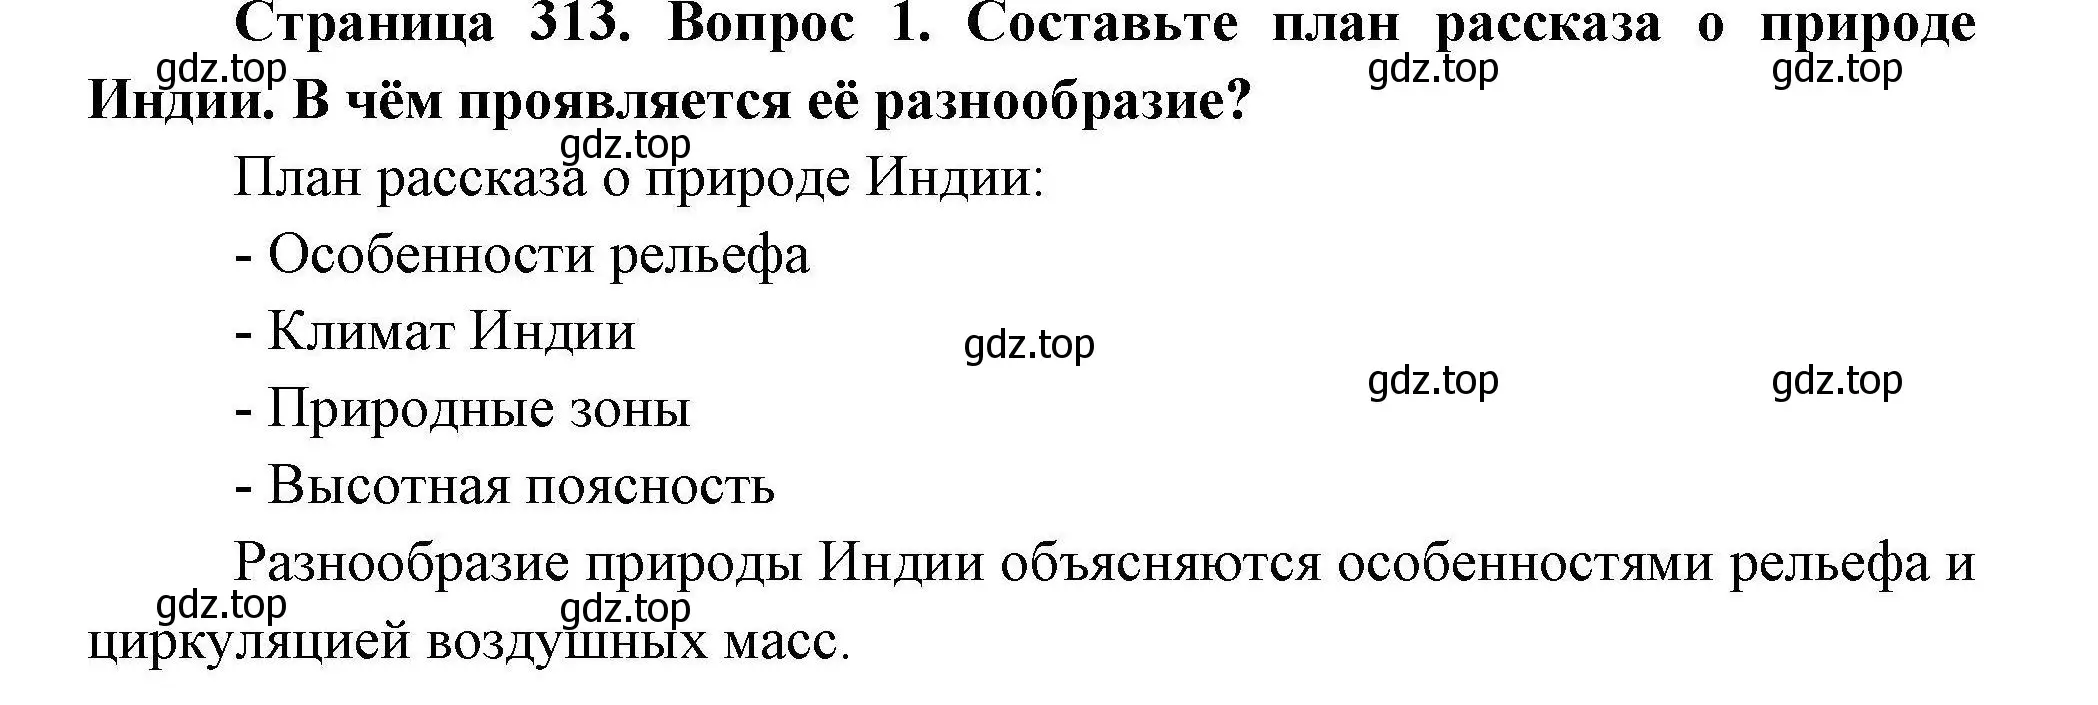 Решение номер 1 (страница 313) гдз по географии 7 класс Коринская, Душина, учебник